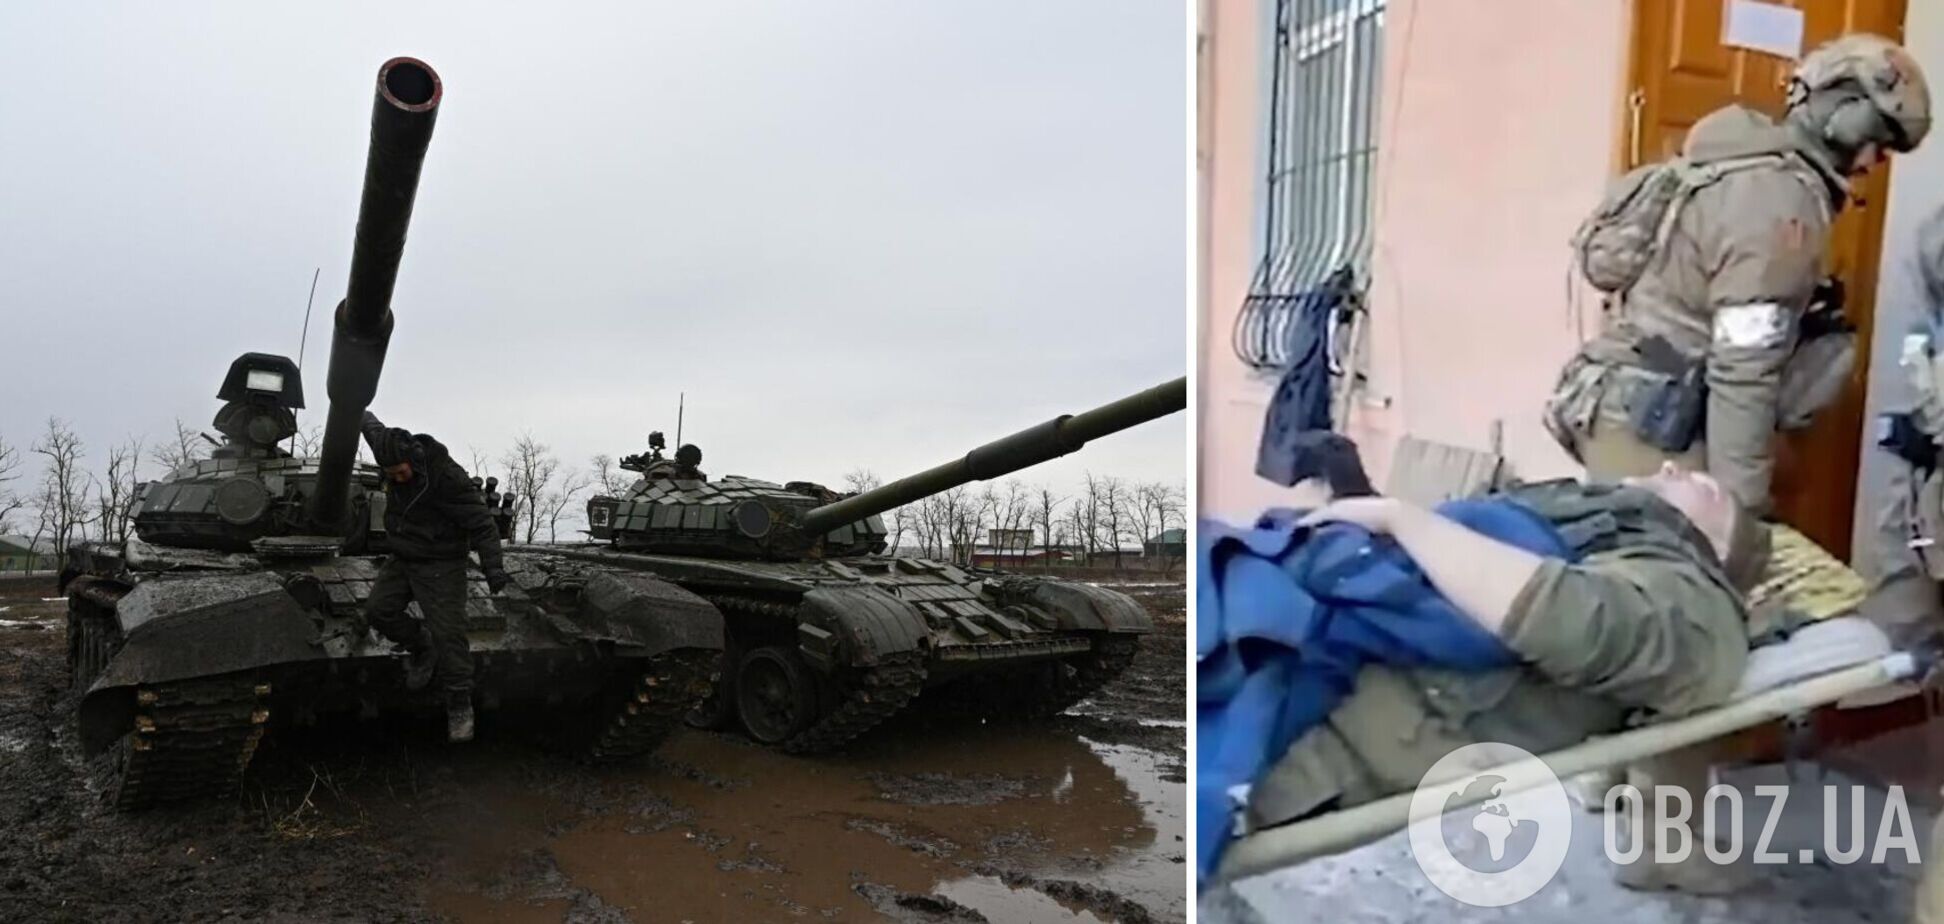 'Угробив' бригаду росіян: з'ясувалися деталі про командира РФ, якого окупант переїхав танком під Києвом. Фото та відео